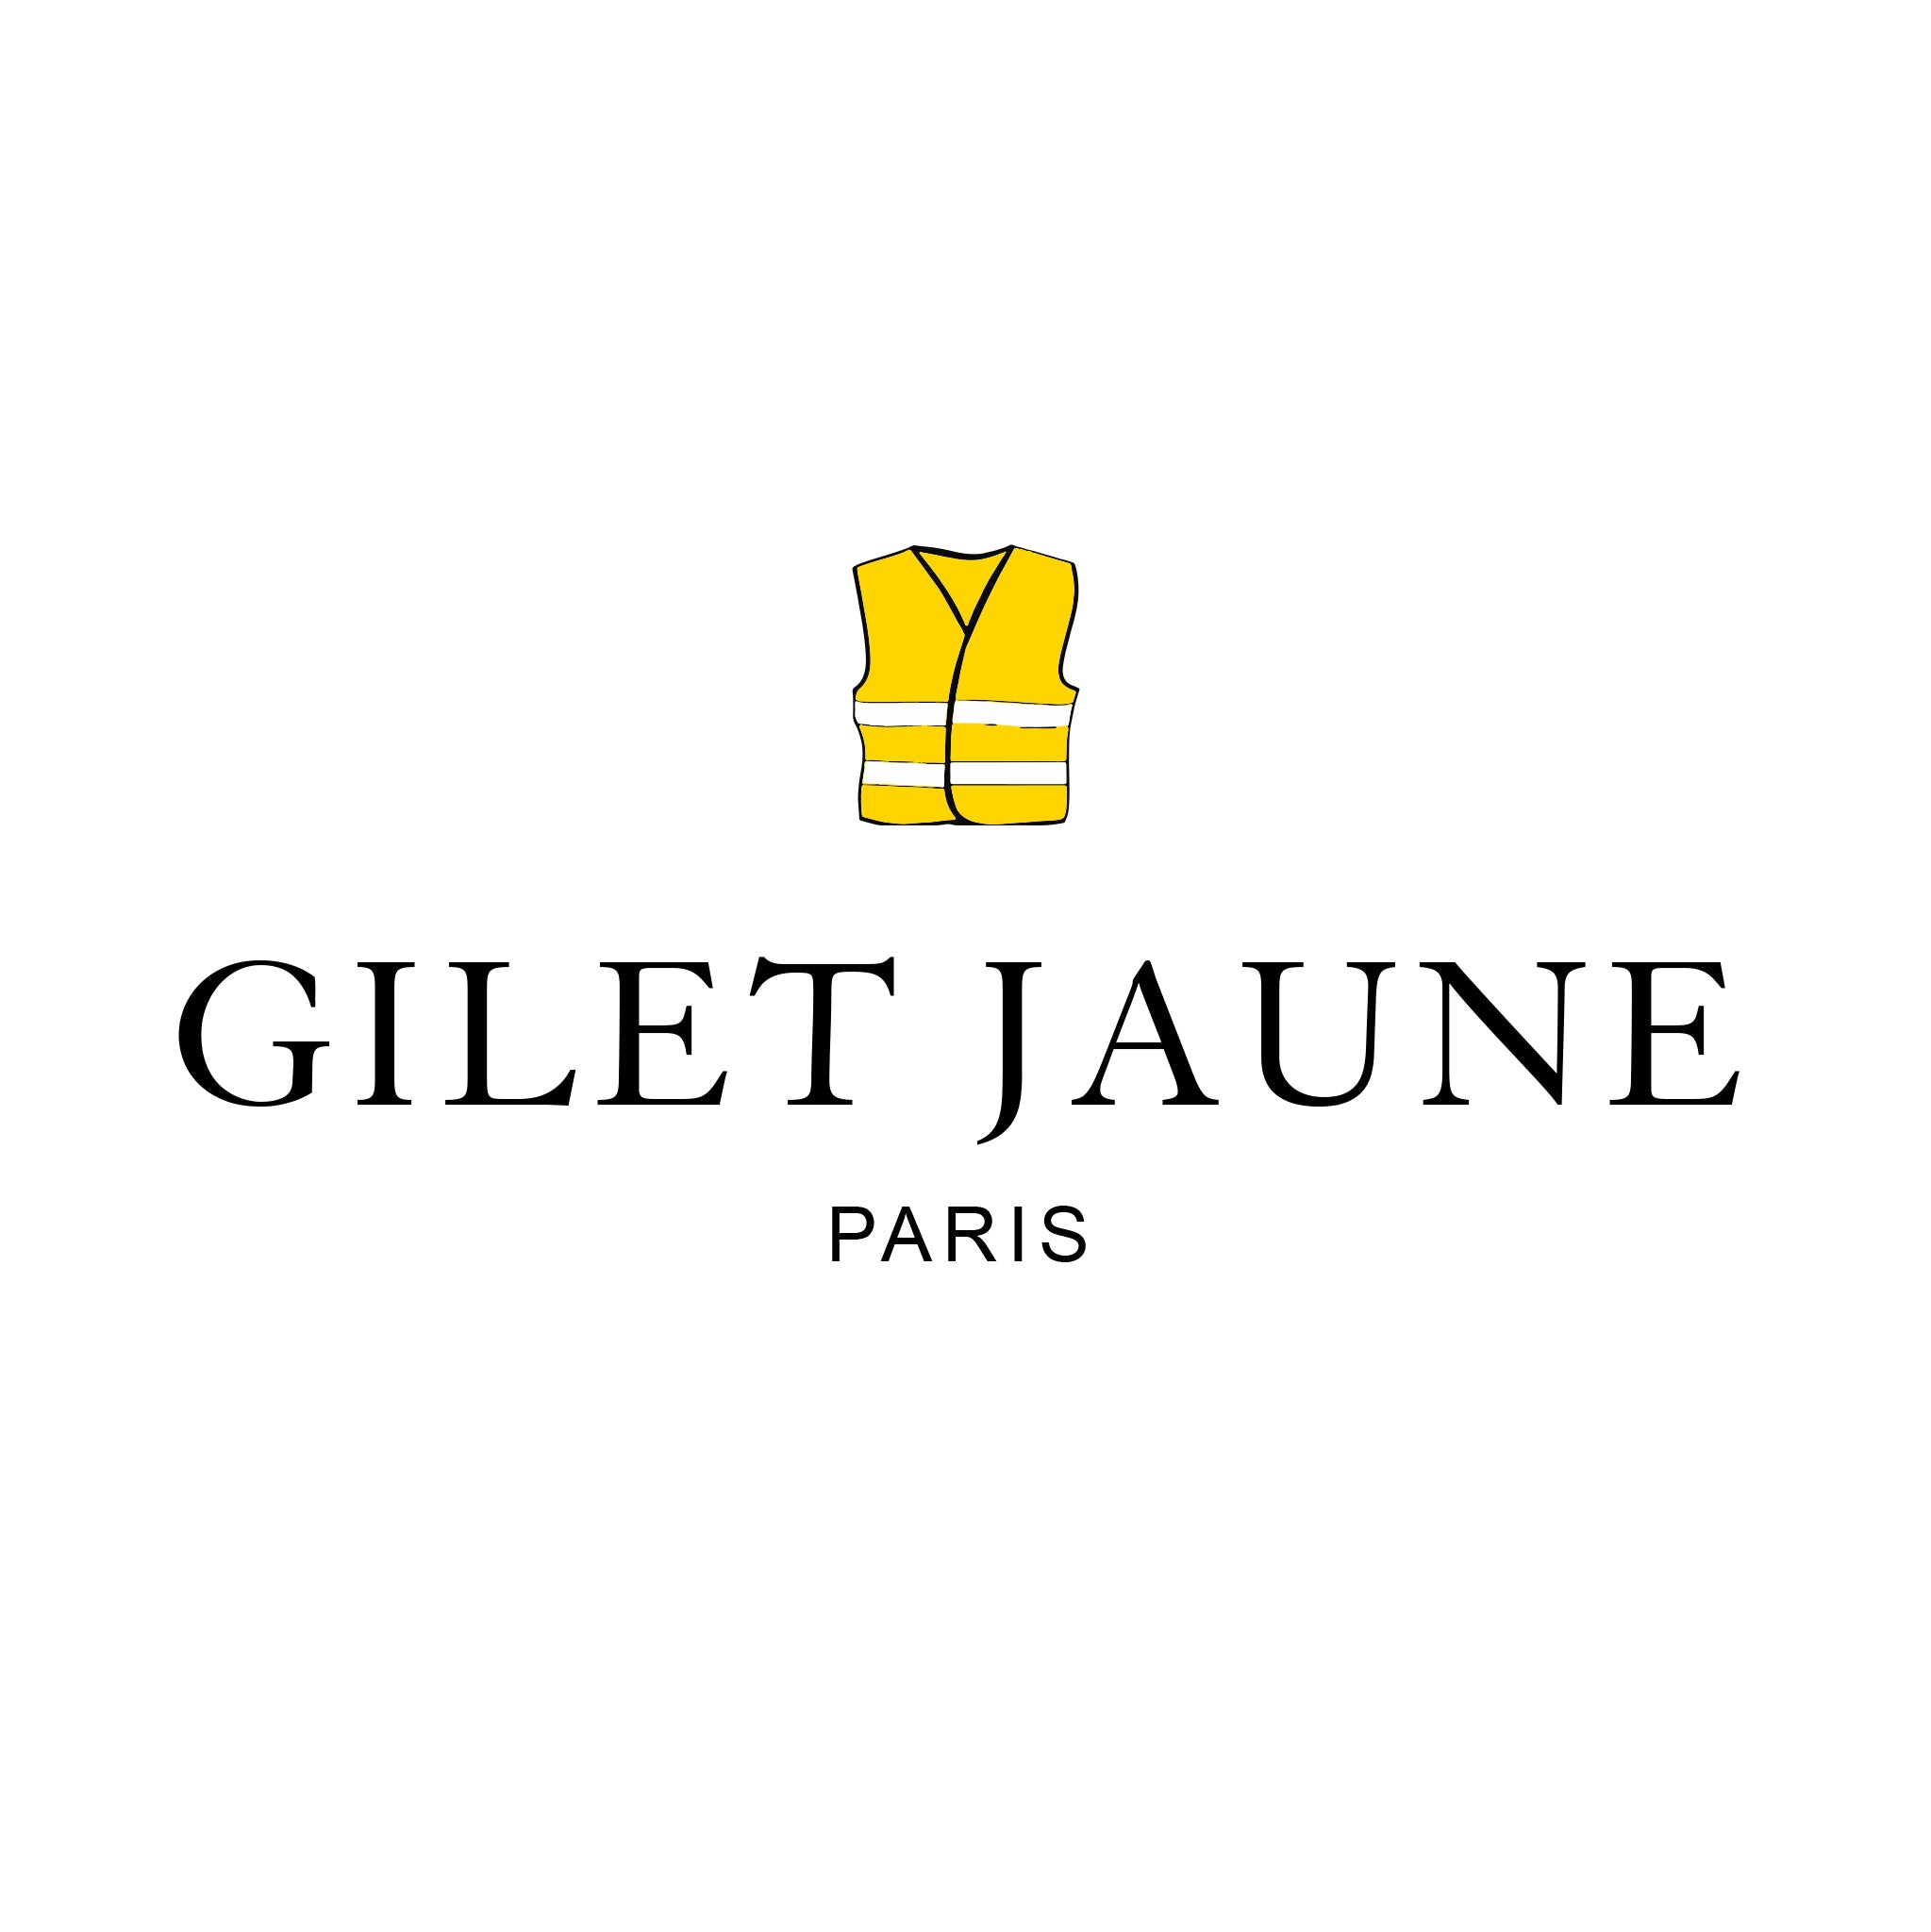 Gilet jaune Paris